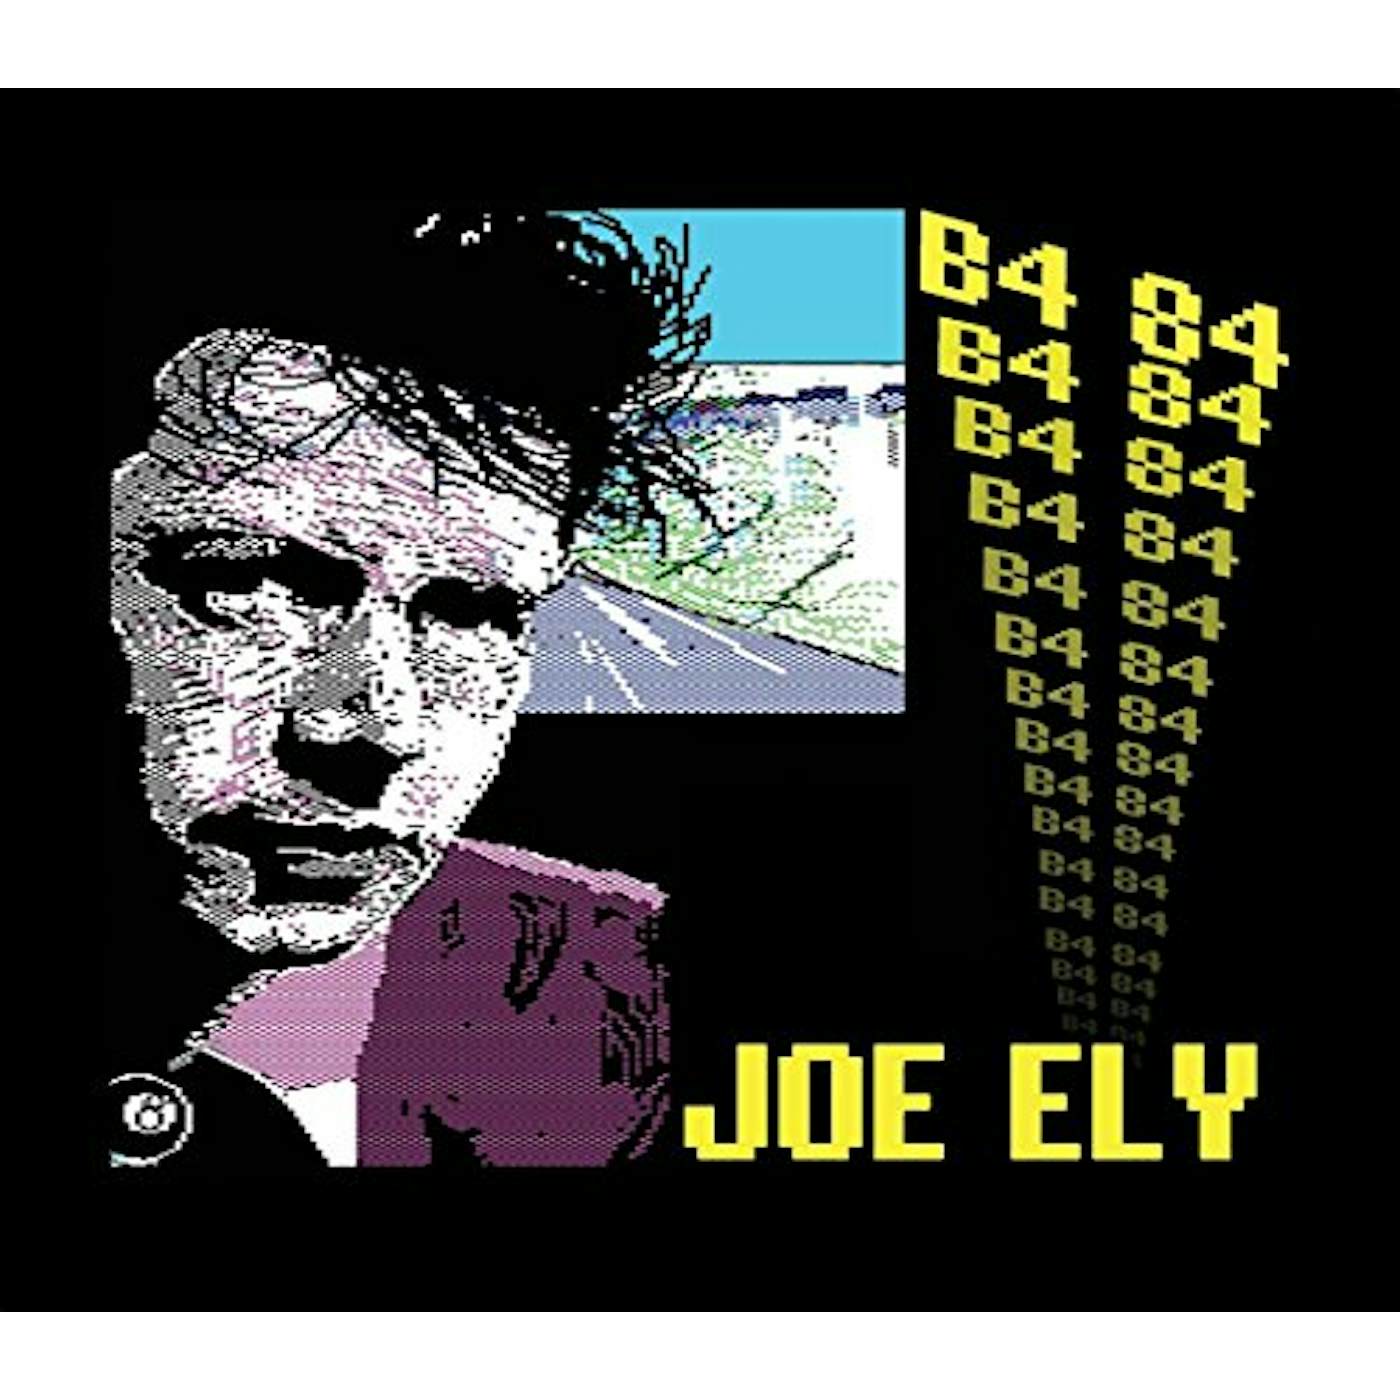 Joe Ely B4 84 CD